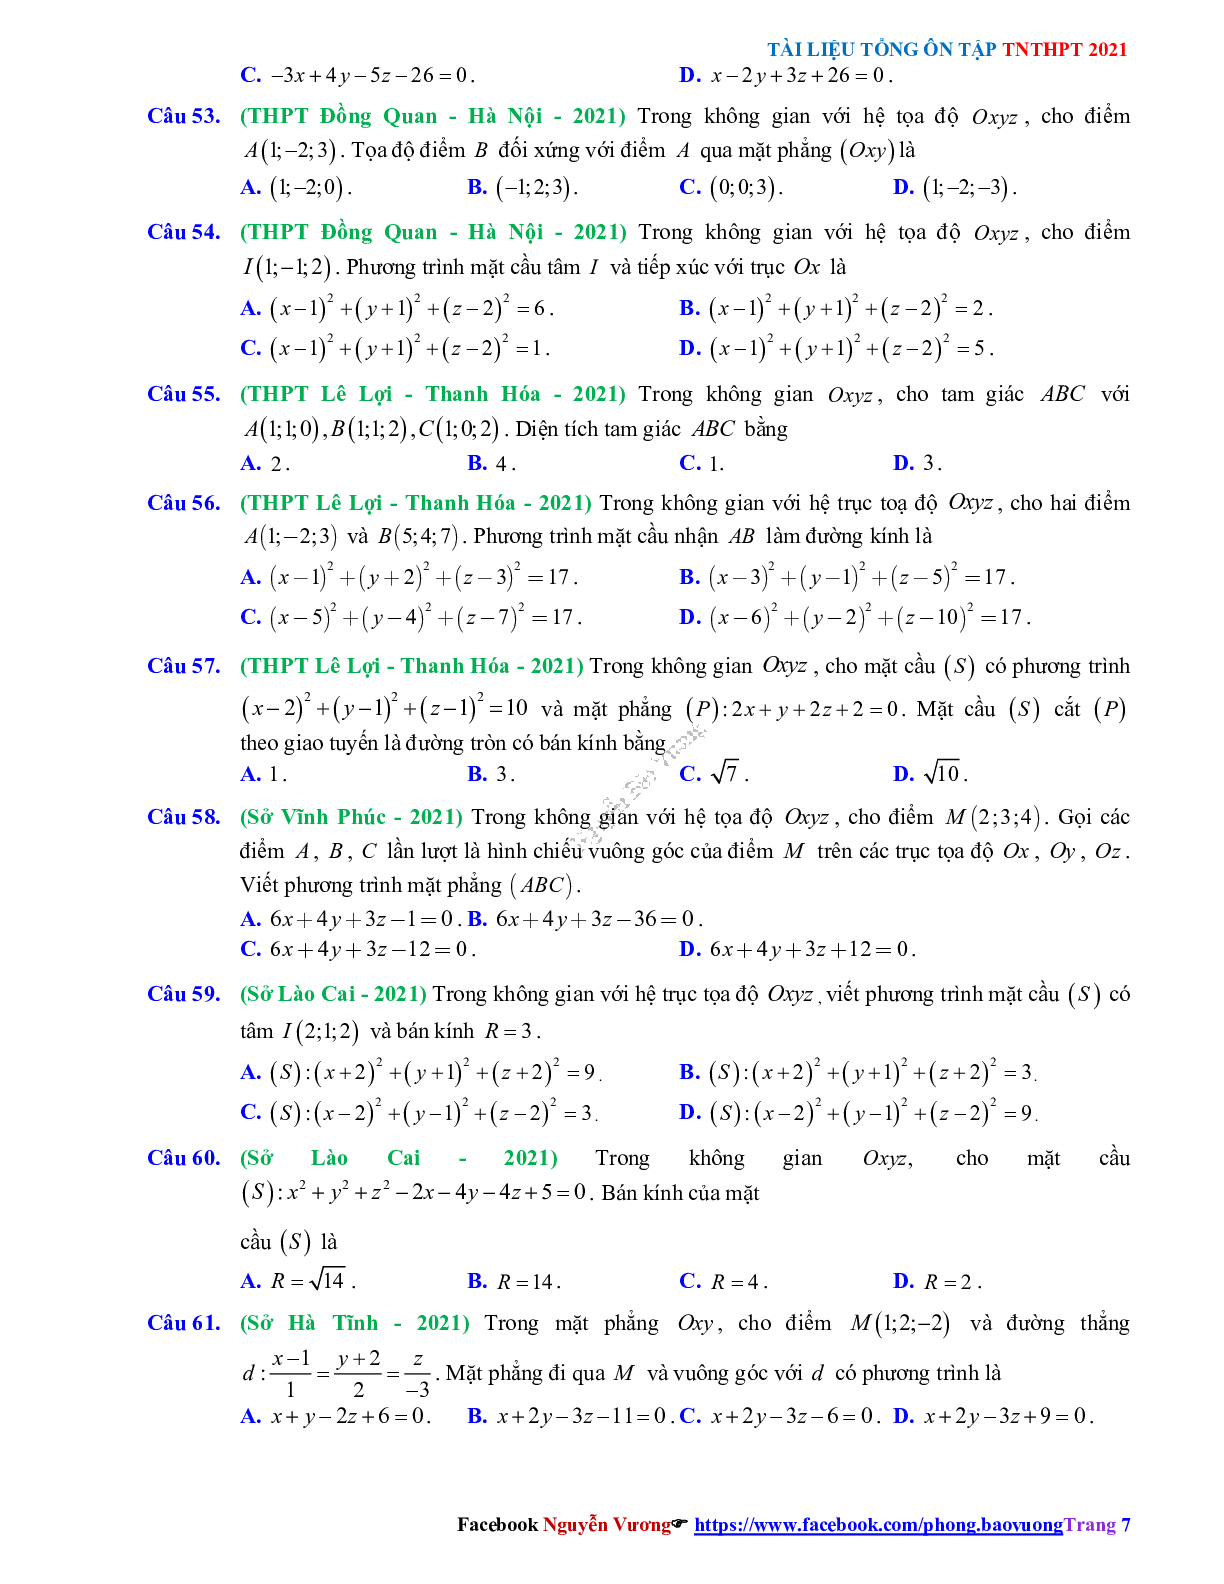 Trắc nghiệm ôn thi THPT QG Toán lớp 12: Câu hỏi phương pháp tọa độ trong không gian mức độ thông hiểu (trang 7)